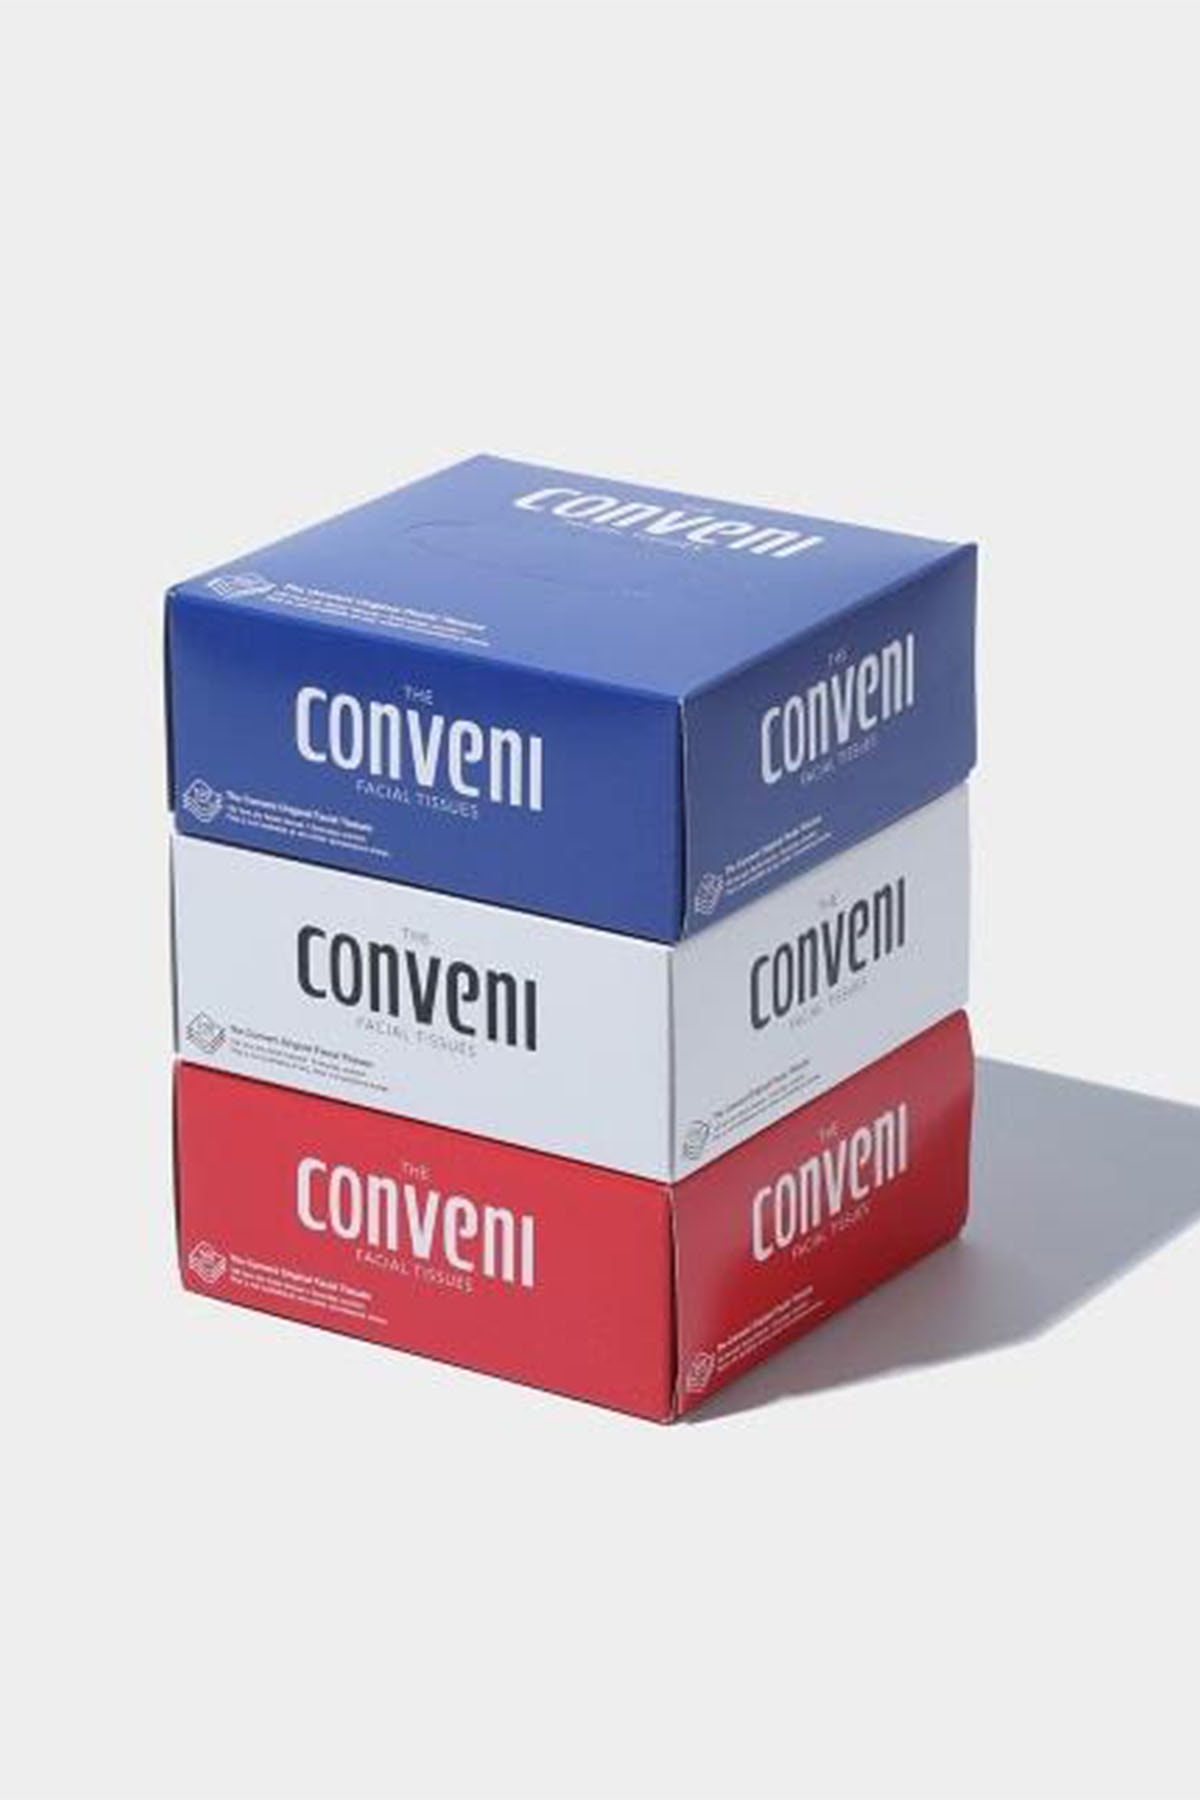 ザ・コンビニ おうち時間に彩りを添える THE CONVENI のライフスタイルアイテムを一挙紹介